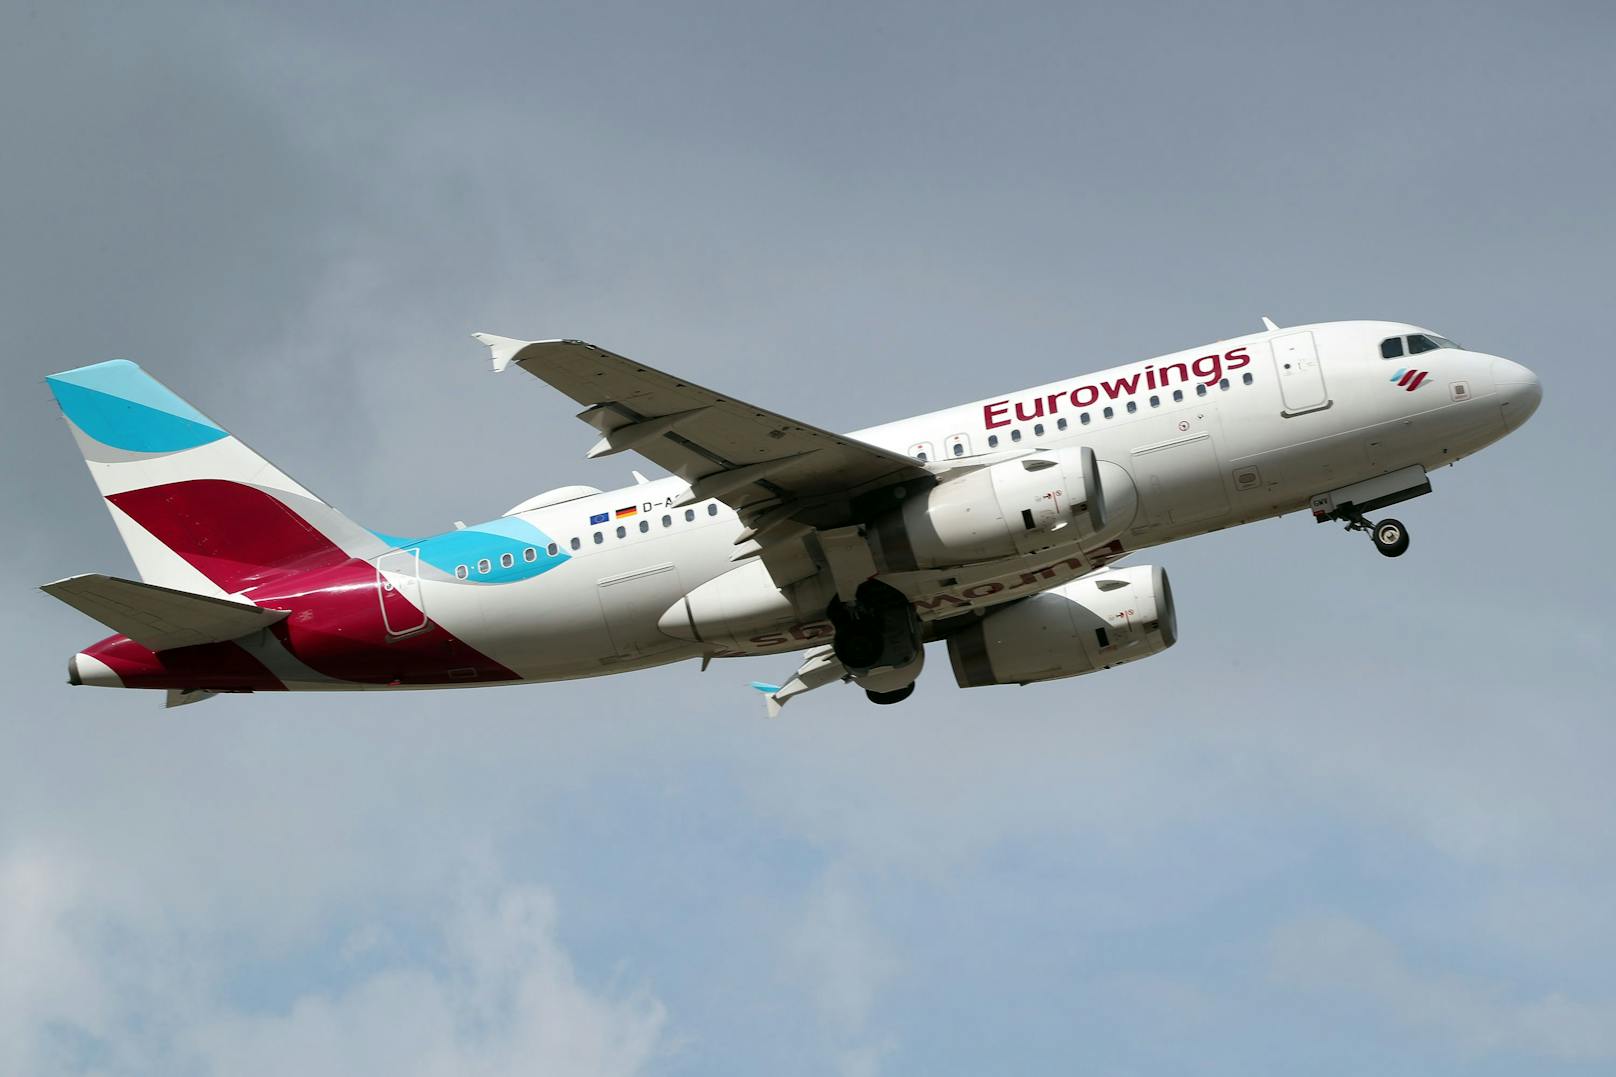 Ob die Eurowings-Flugzeuge tatsächlich abheben ist fraglich nachdem die Piloten einen Streik nicht ausschließen. (Symbolbild).